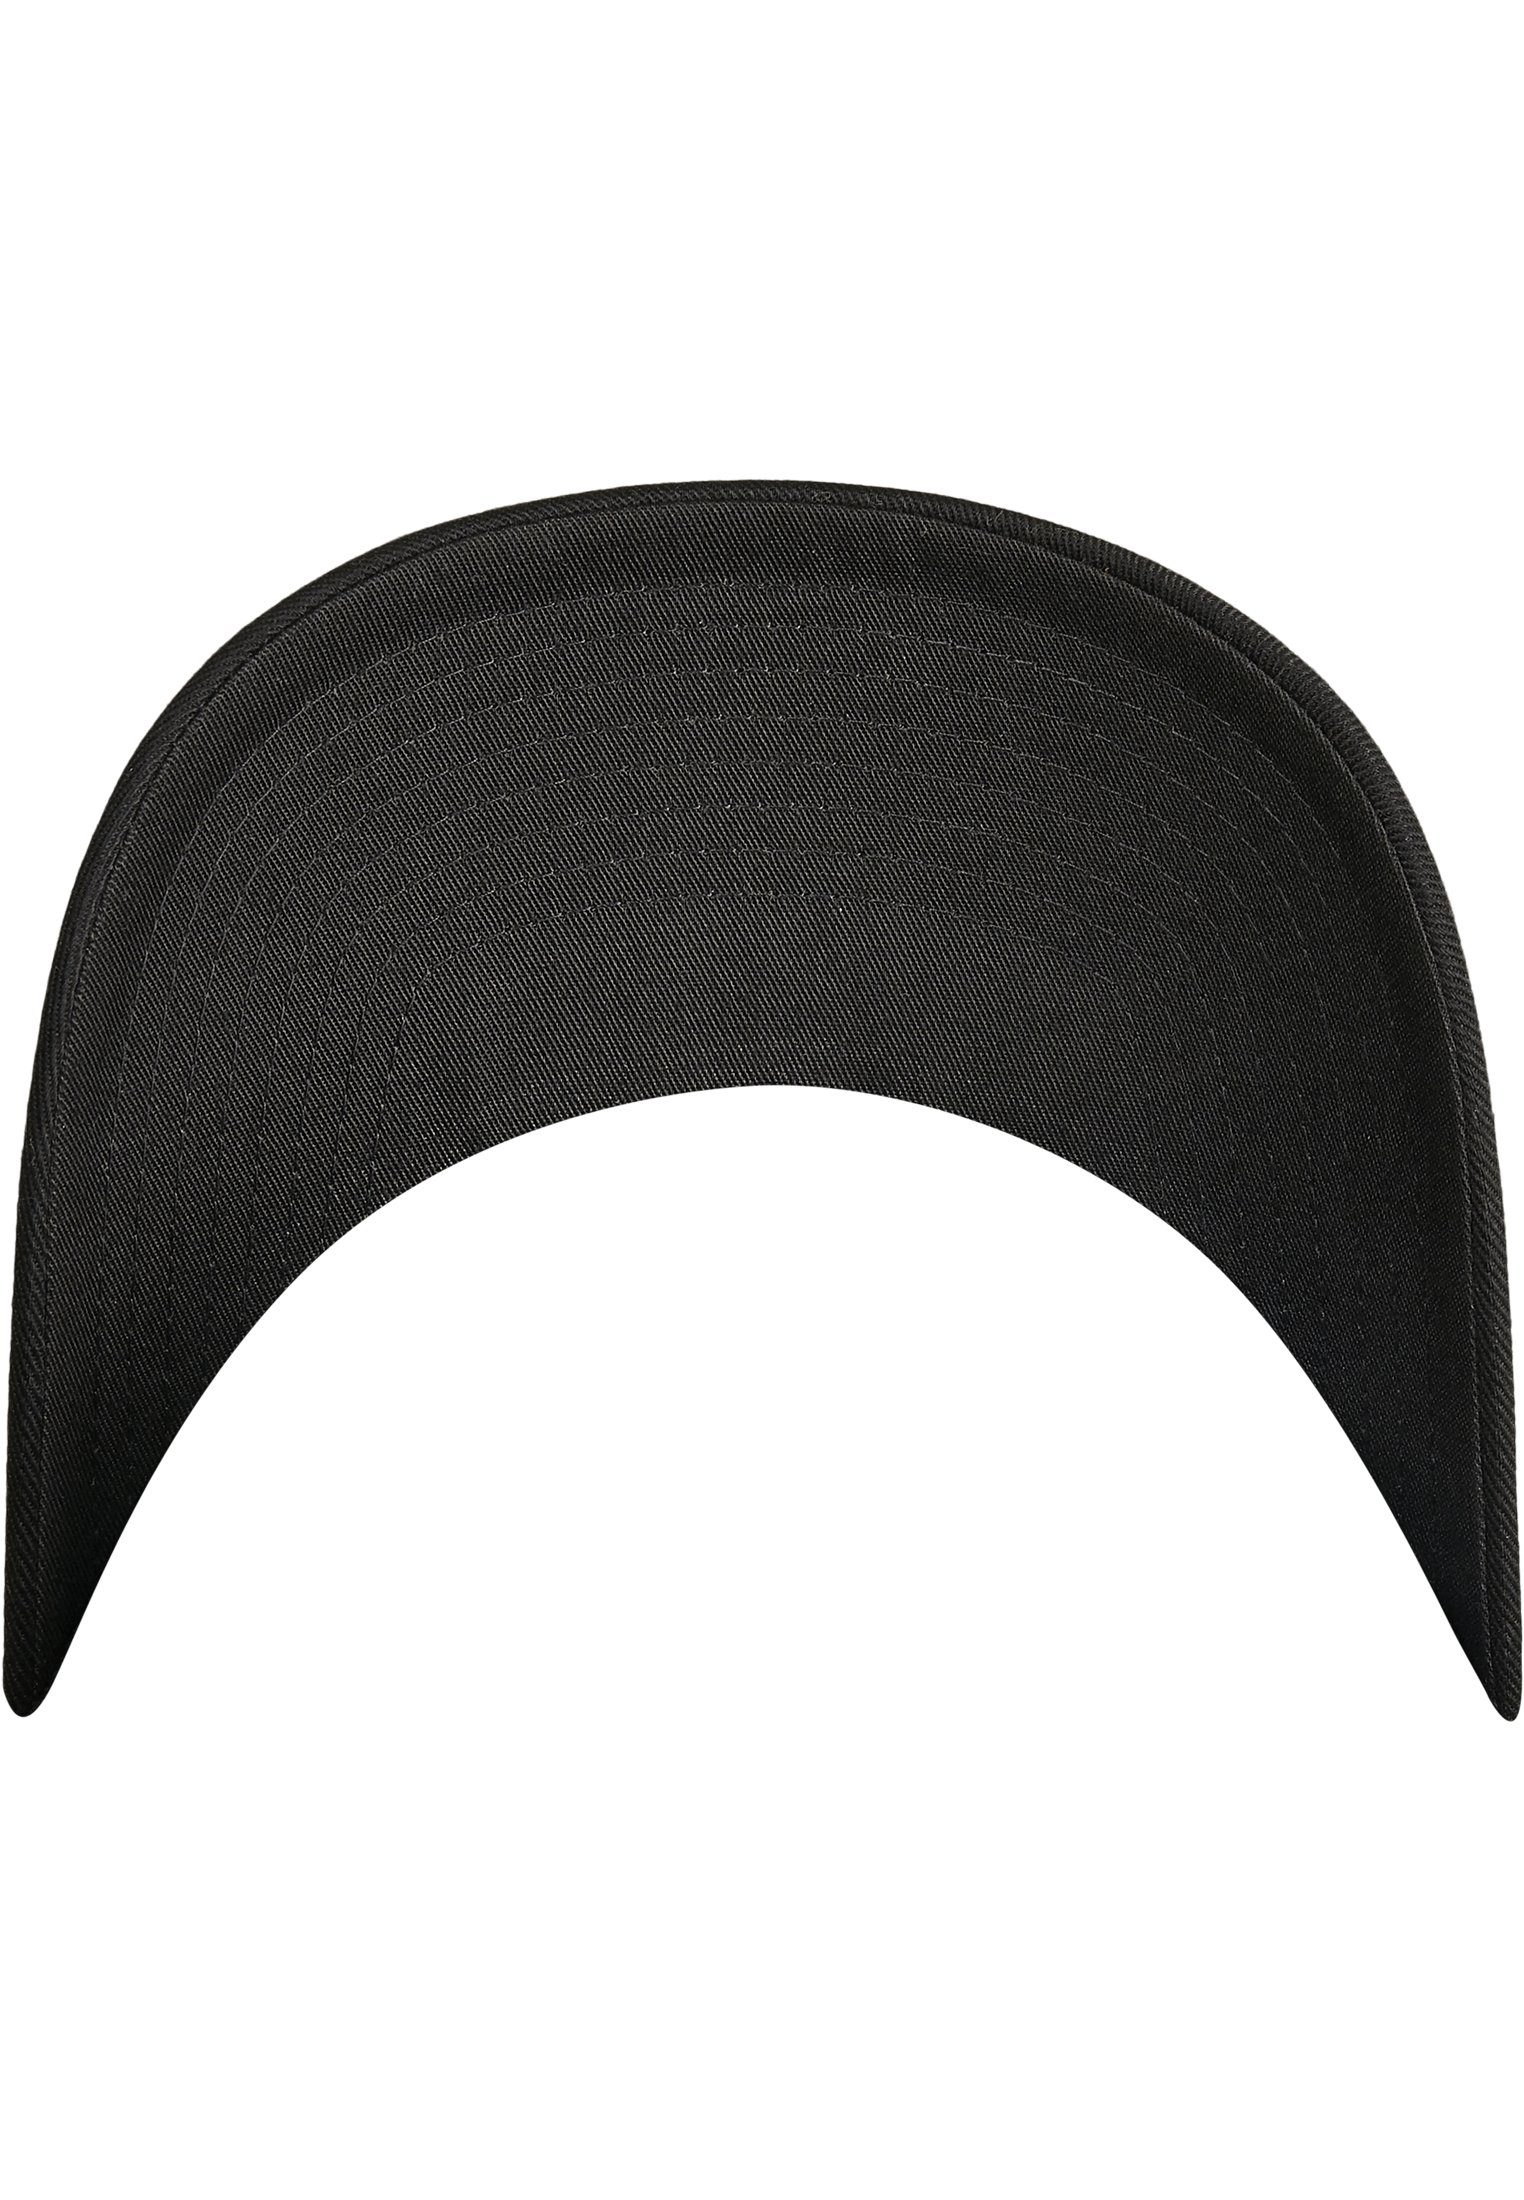 Flexfit Wooly Cap Accessoires Flex black/black Adjustable Combed Flexfit